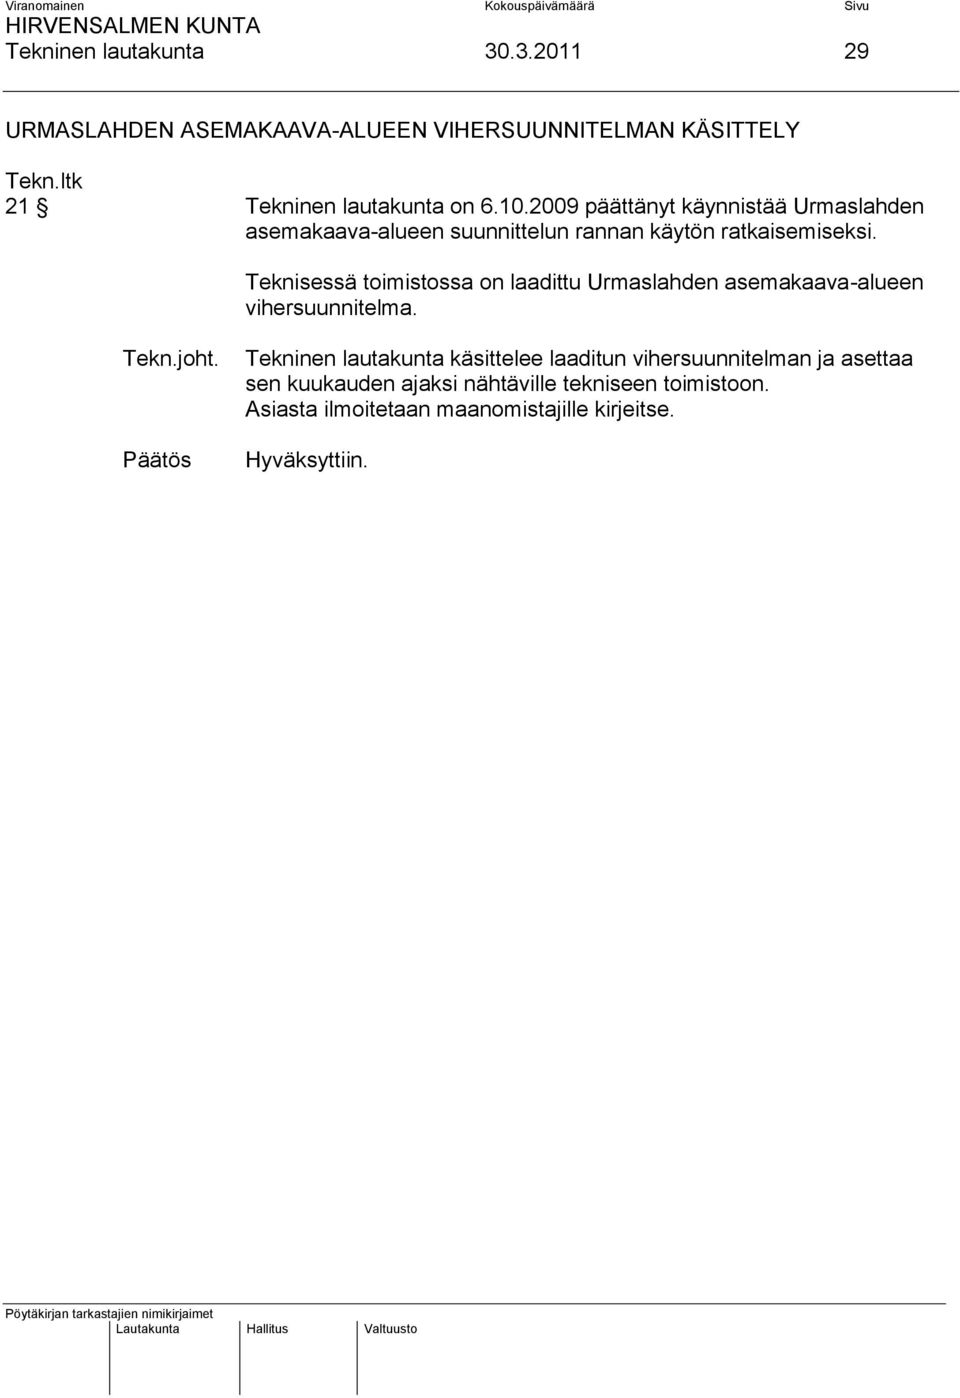 Teknisessä toimistossa on laadittu Urmaslahden asemakaava-alueen vihersuunnitelma. Tekn.joht.